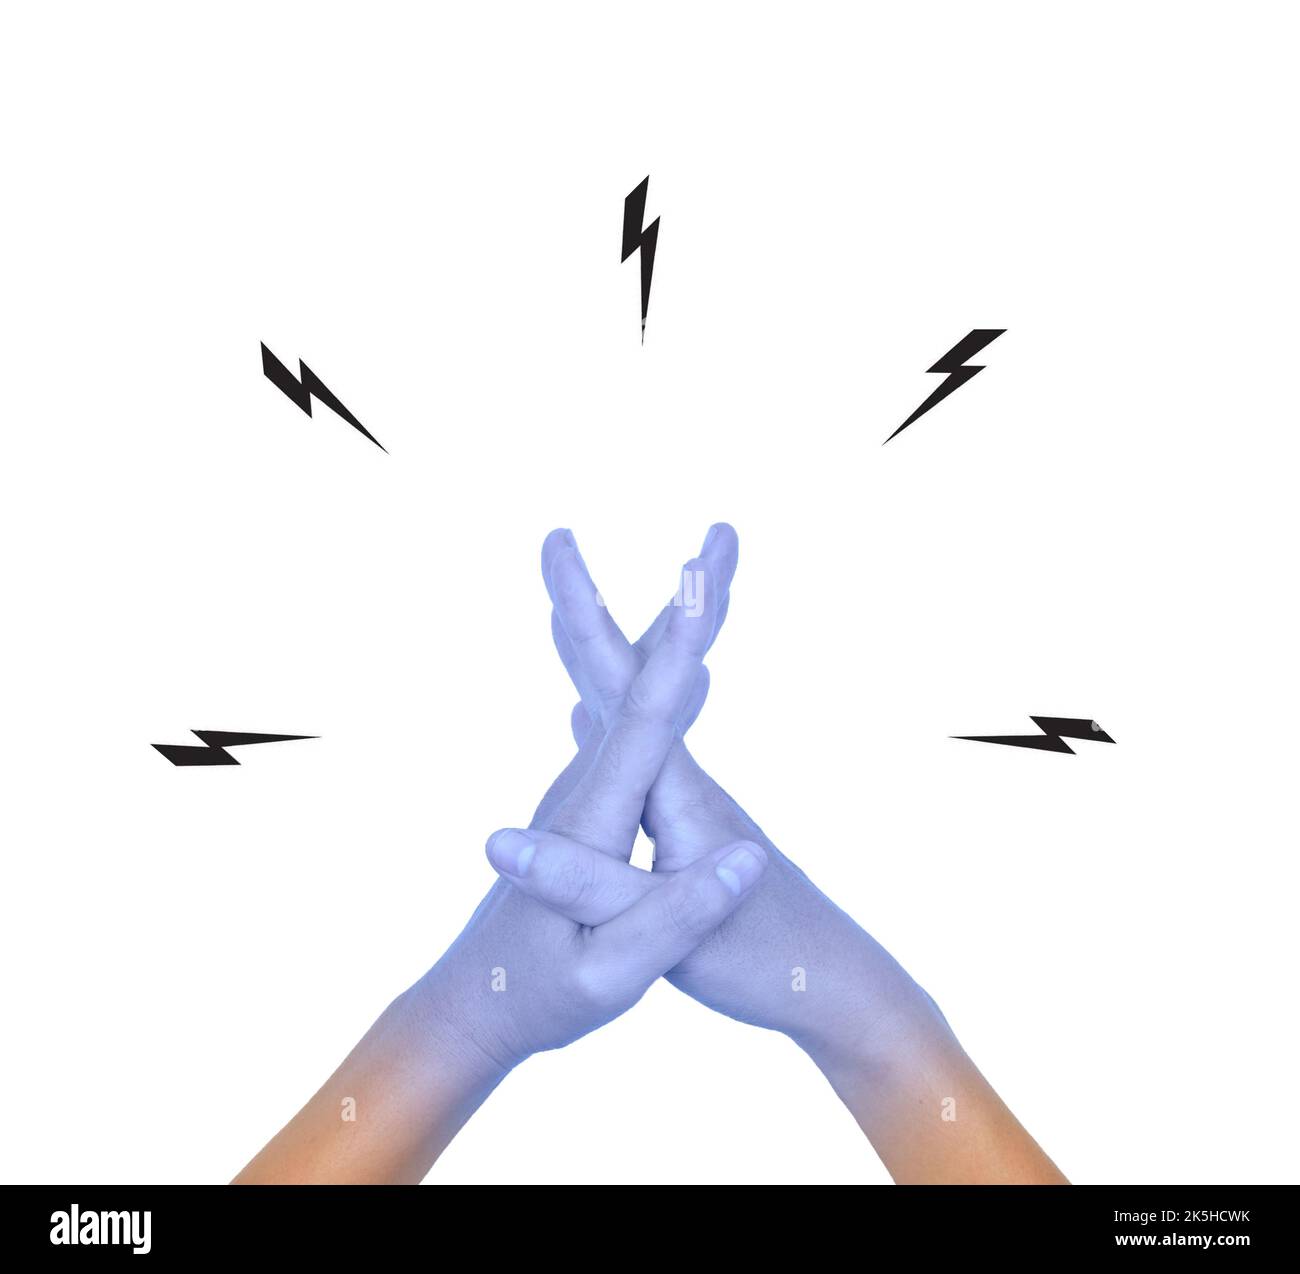 Zusammengekrallte Hände mit hellblauer Farbe des asiatischen jungen Mannes. Konzept der kalten und unbeholfenen Hand. Stockfoto